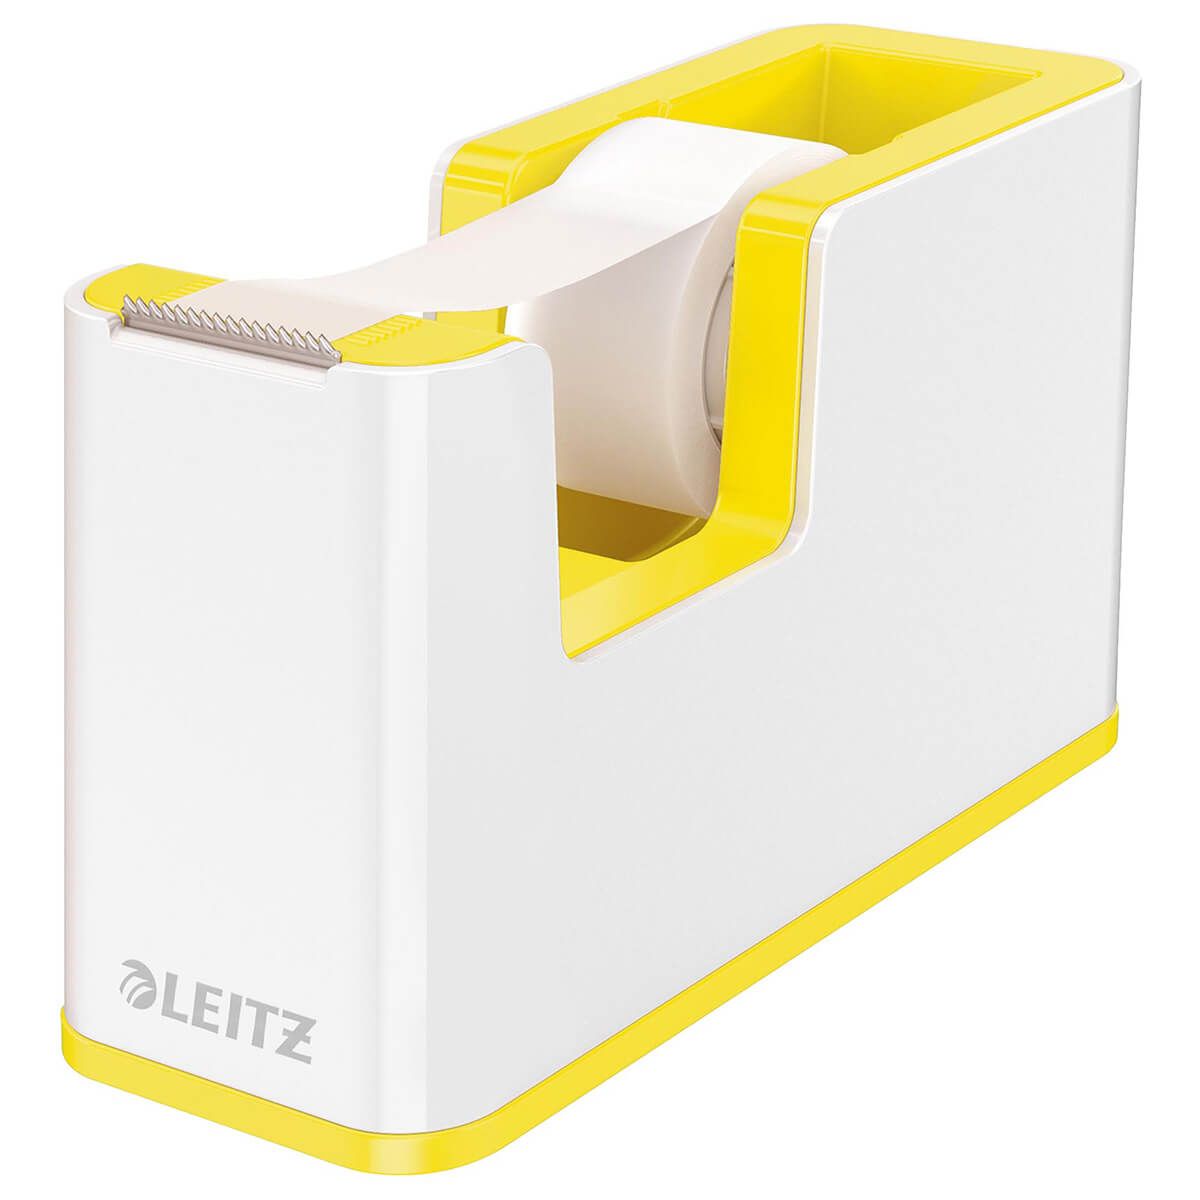 Leitz 5364 Tape dispenser Duo Colour WOW+Tape White/Yellow